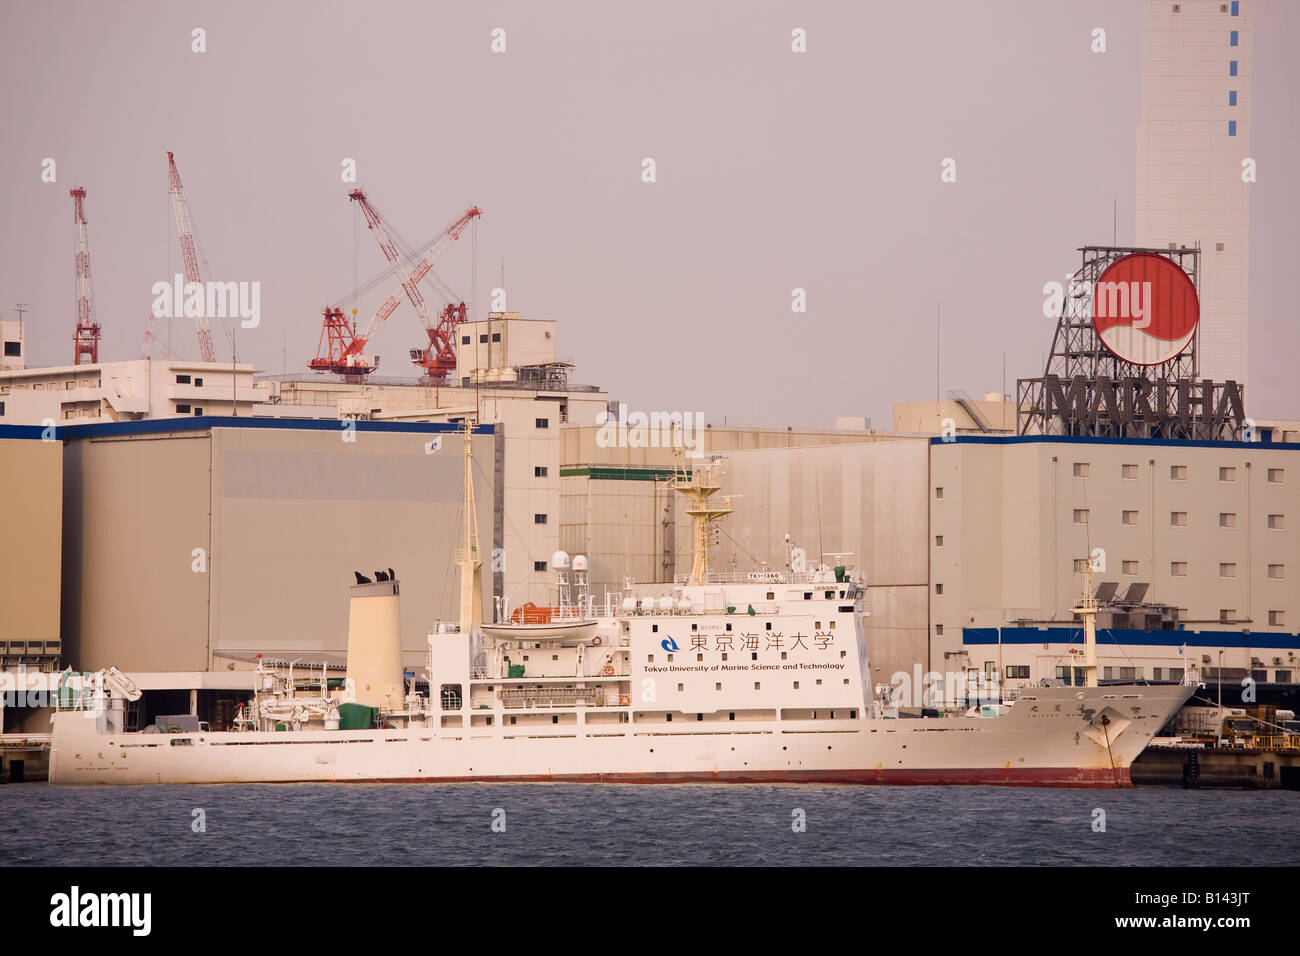 Un navire de recherche de l'Université de Tokyo des sciences et technologies marines est amarré dans la baie de Tokyo, Japon. Banque D'Images